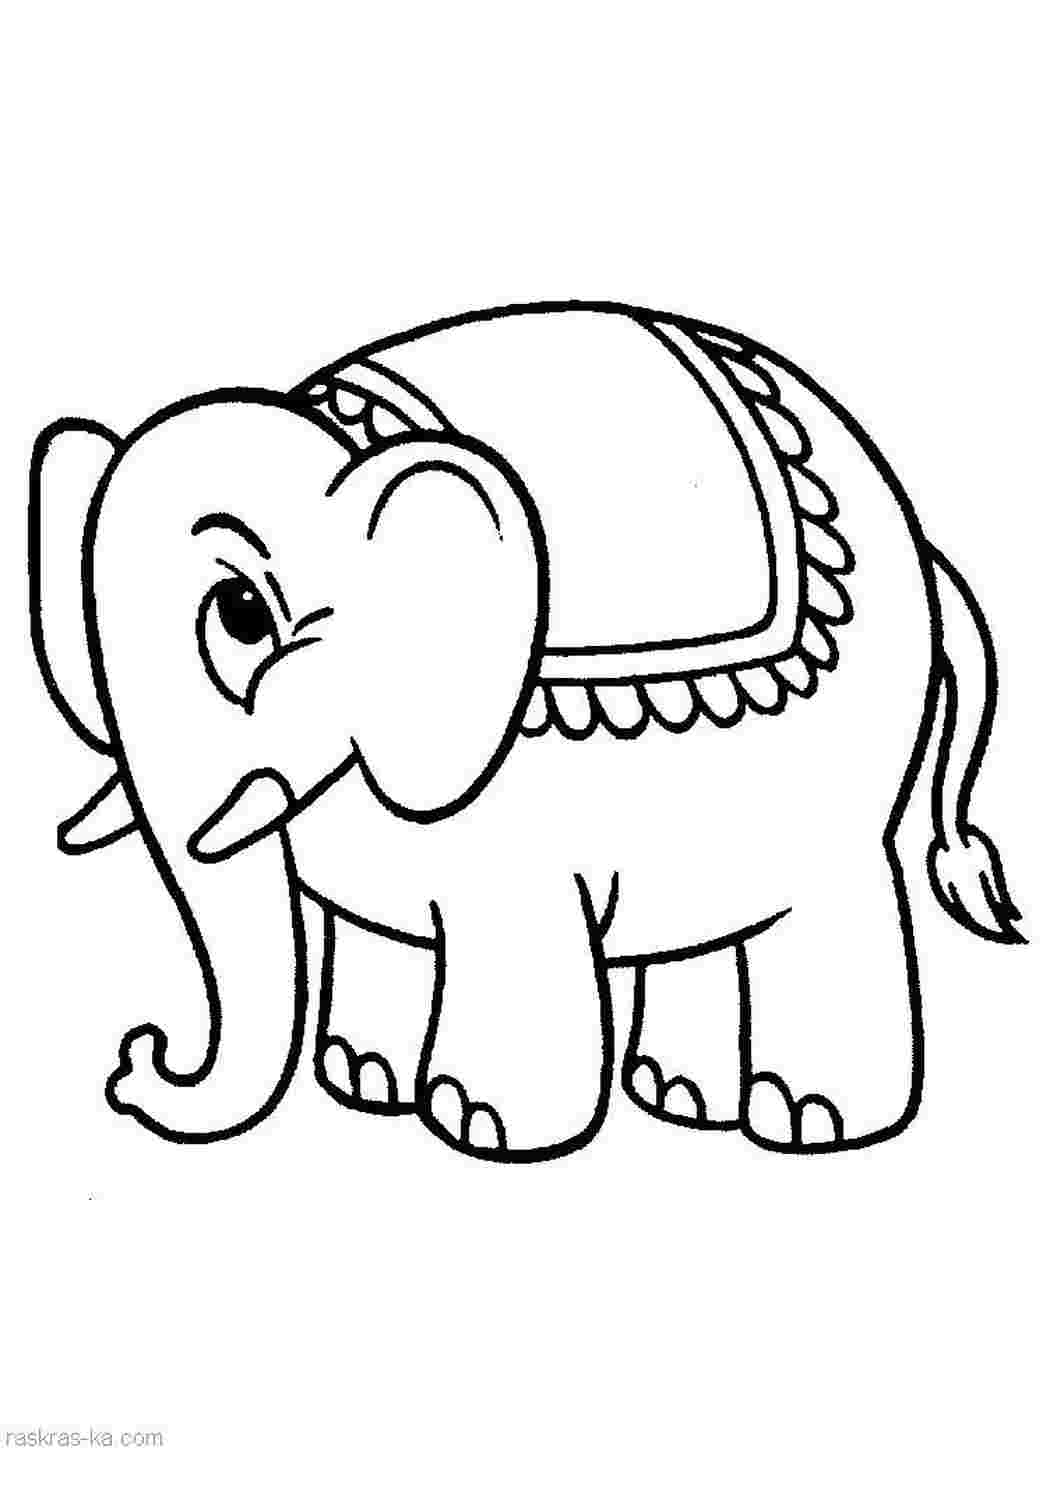 Слон животных раскраски для взрослых